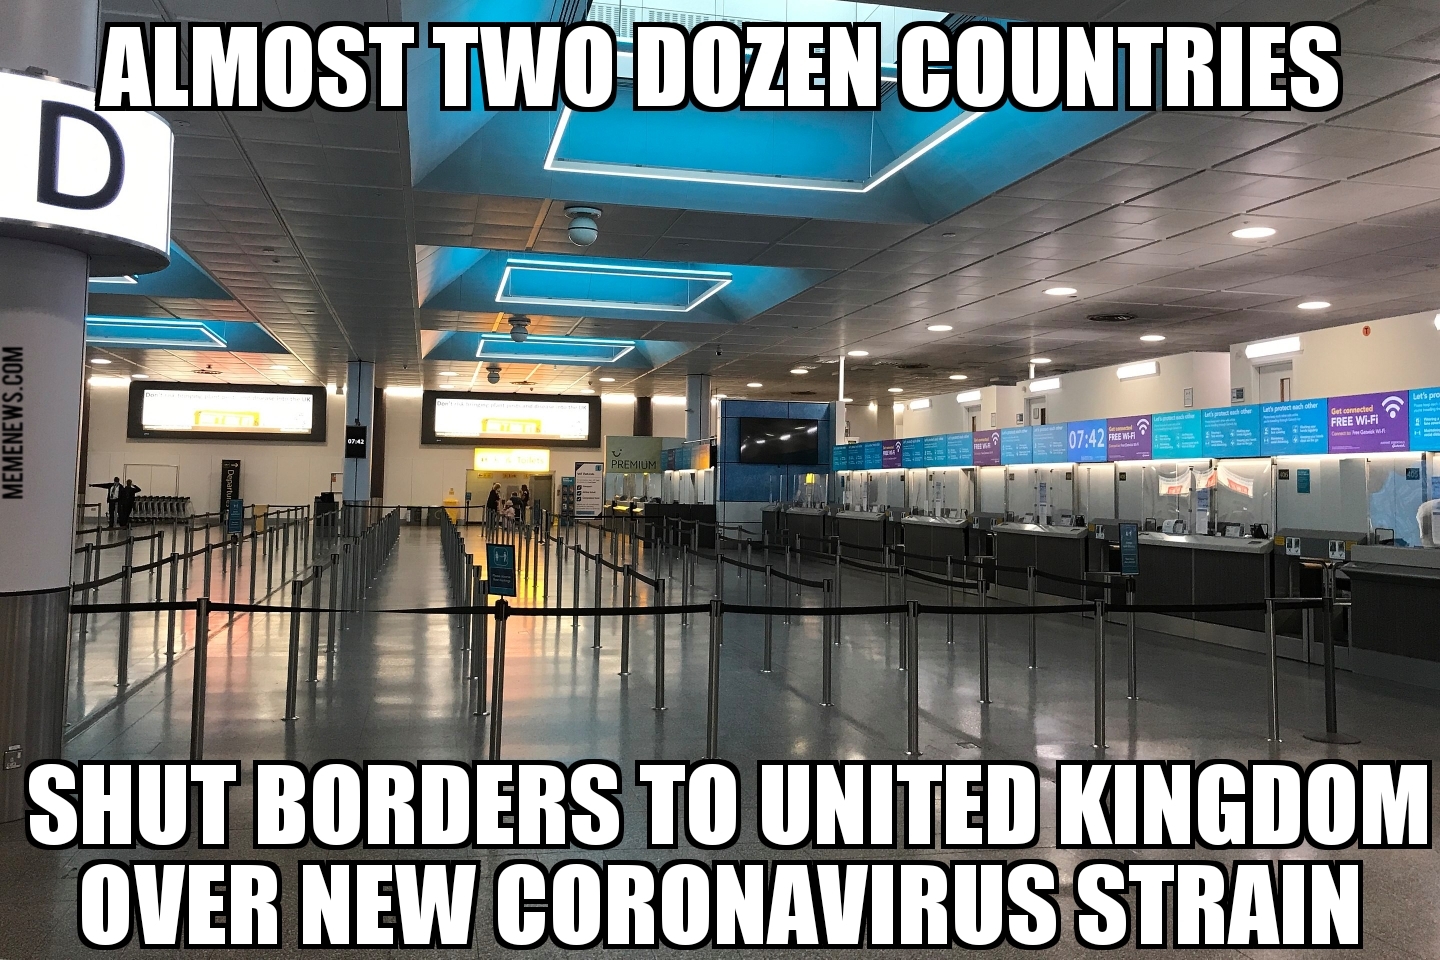 U.K. travel cut over new coronavirus